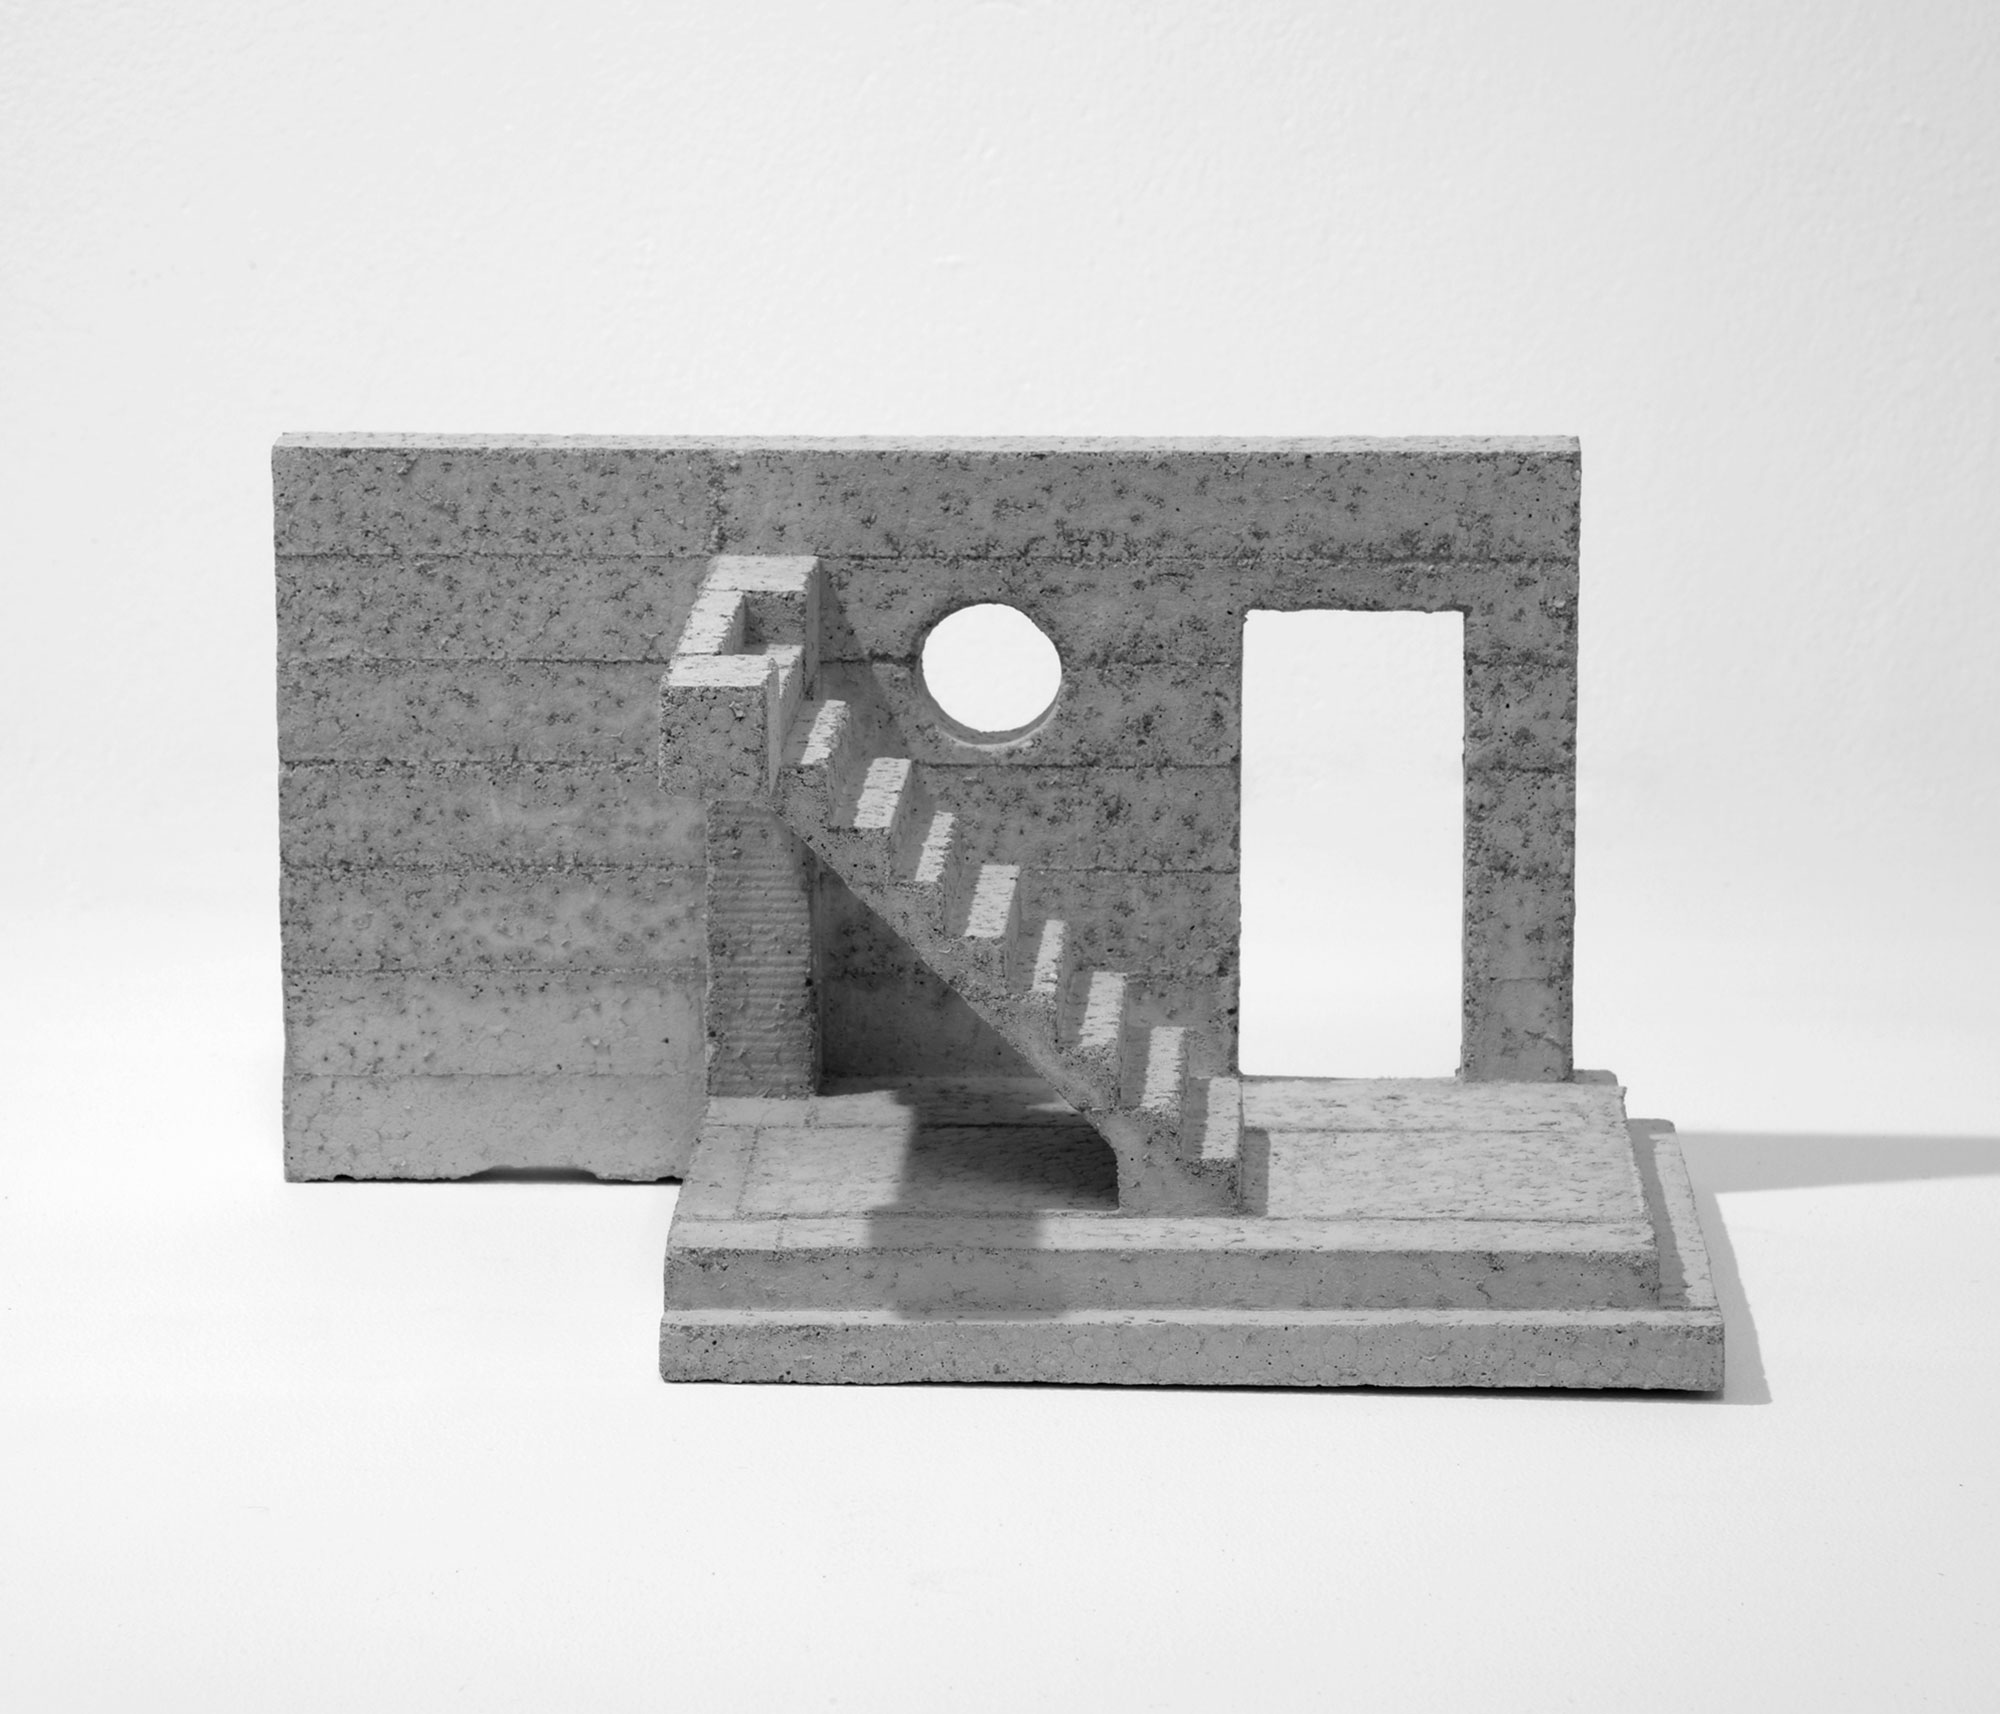 mattia listowski art design objet décoration sculpture béton moulage micro architecture maquette passage 7 édition limitée numérotée signée paris bruxelles 2021